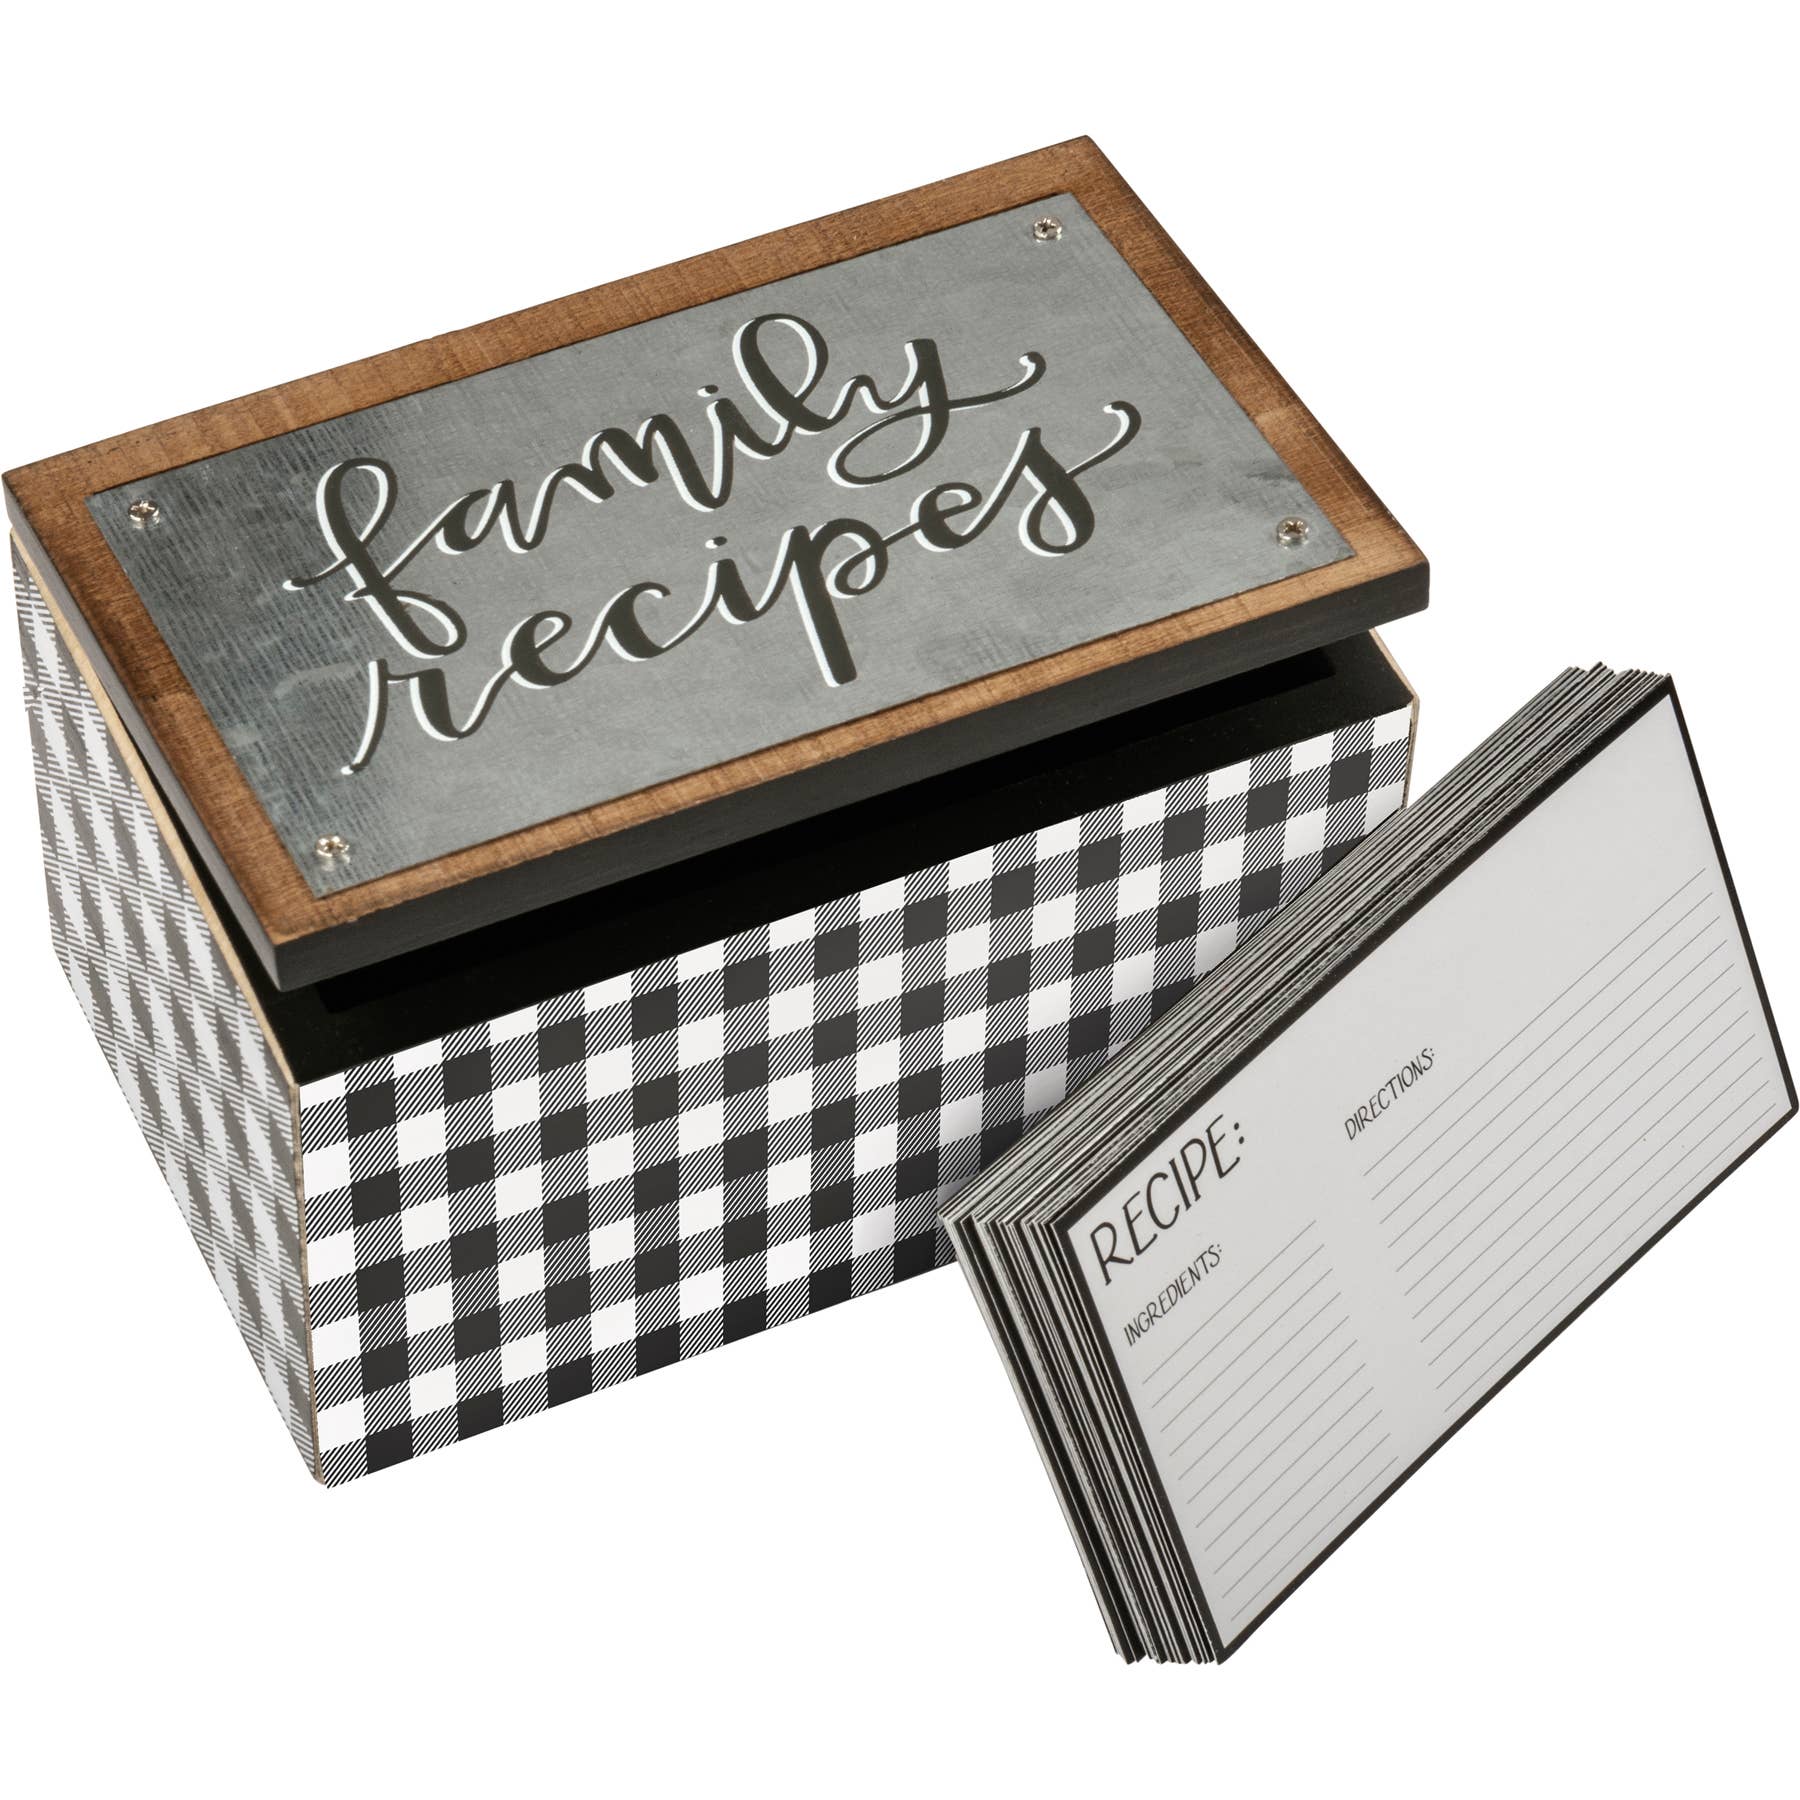 Family Recipes Recipe Box